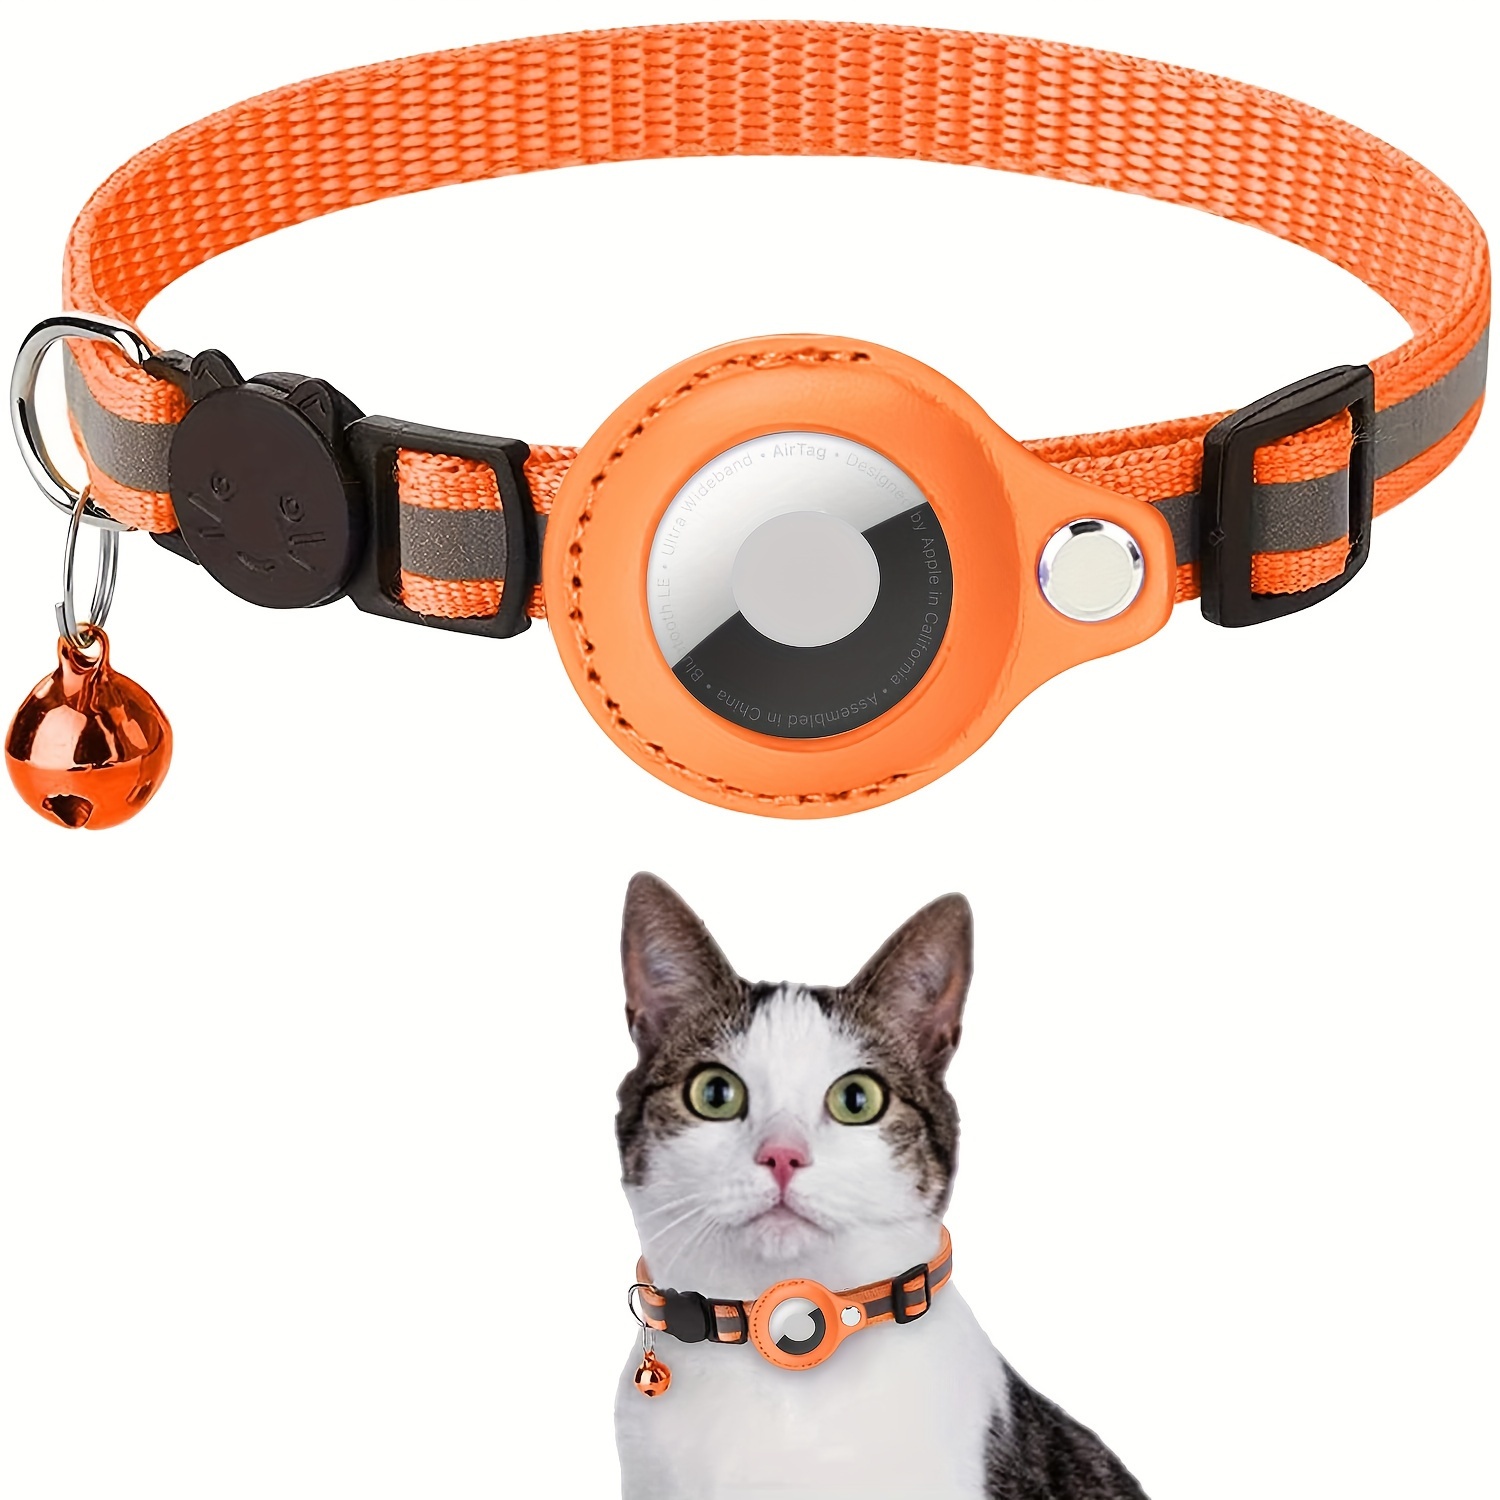 Airtag Cat Collar, collar de gato GPS de cuero ajustable para cachorros de  gatos con soporte Airtag y campana